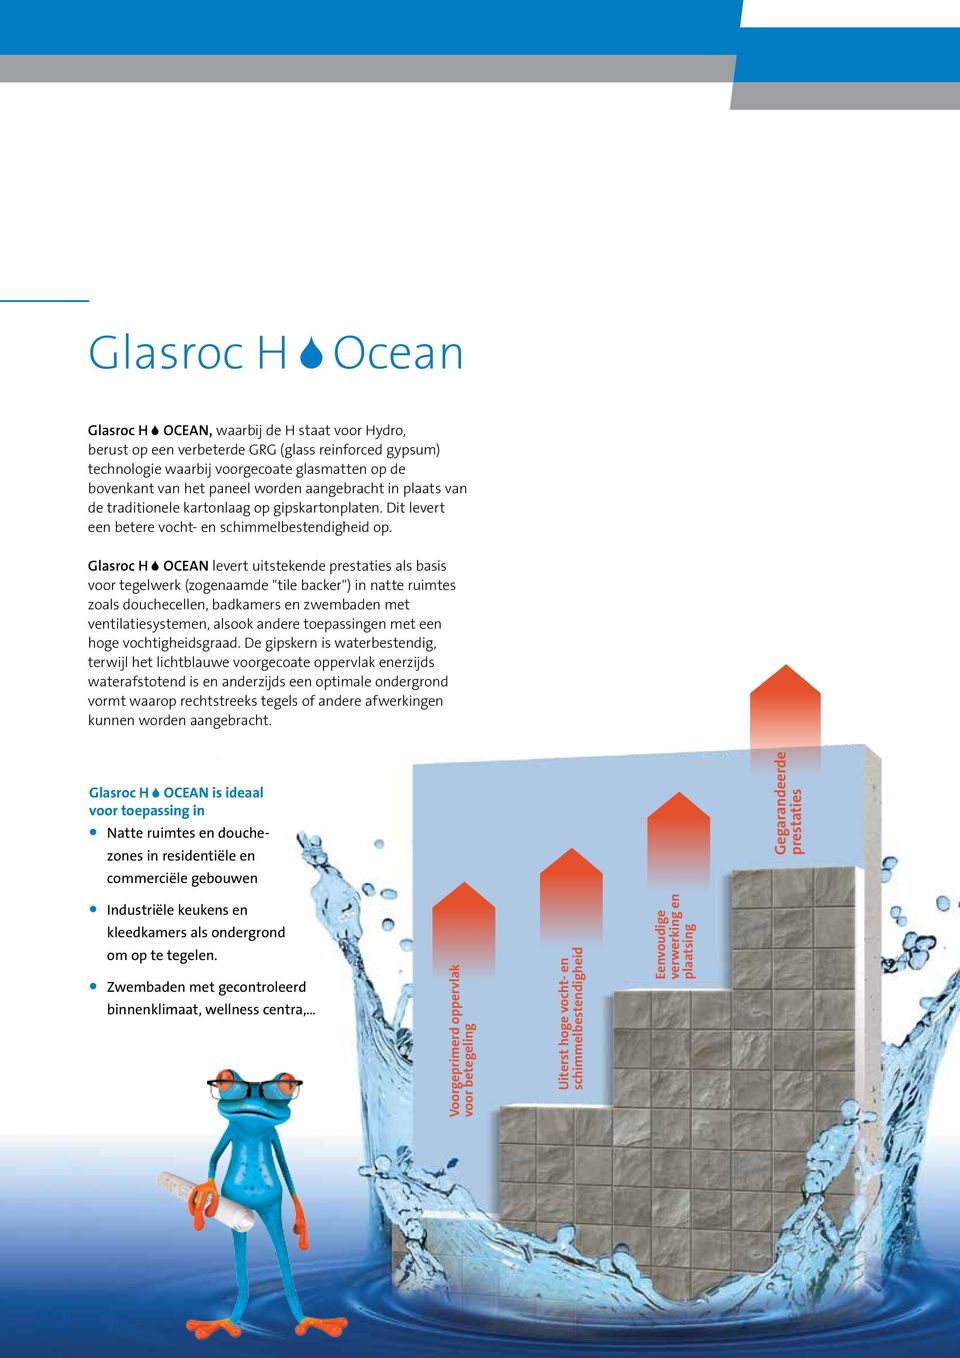 Glasroc H OCEAN levert uitstekende prestaties als basis voor tegelwerk (zogenaamde "tile backer") in natte ruimtes zoals douchecellen, badkamers en zwembaden met ventilatiesystemen, alsook andere